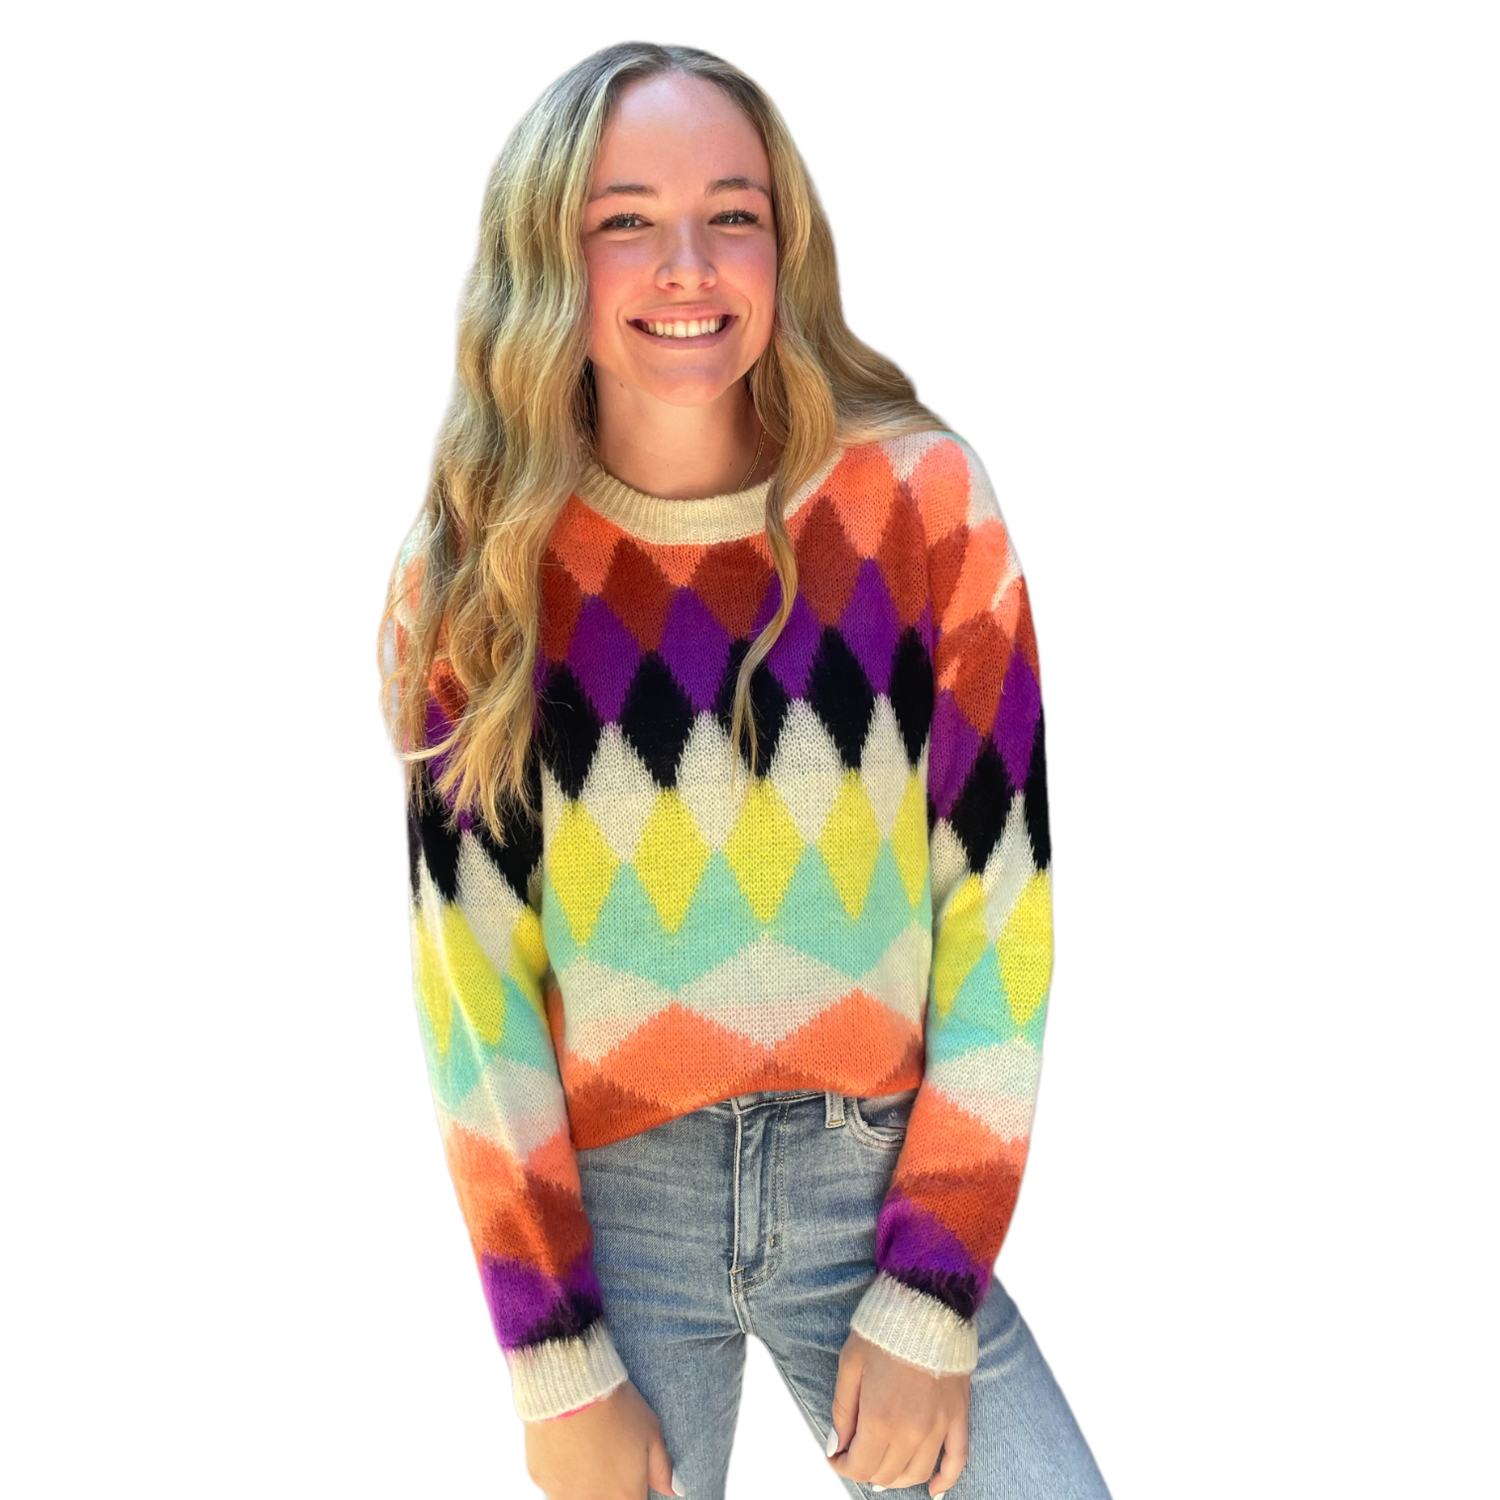 Emily Argyle Sweater